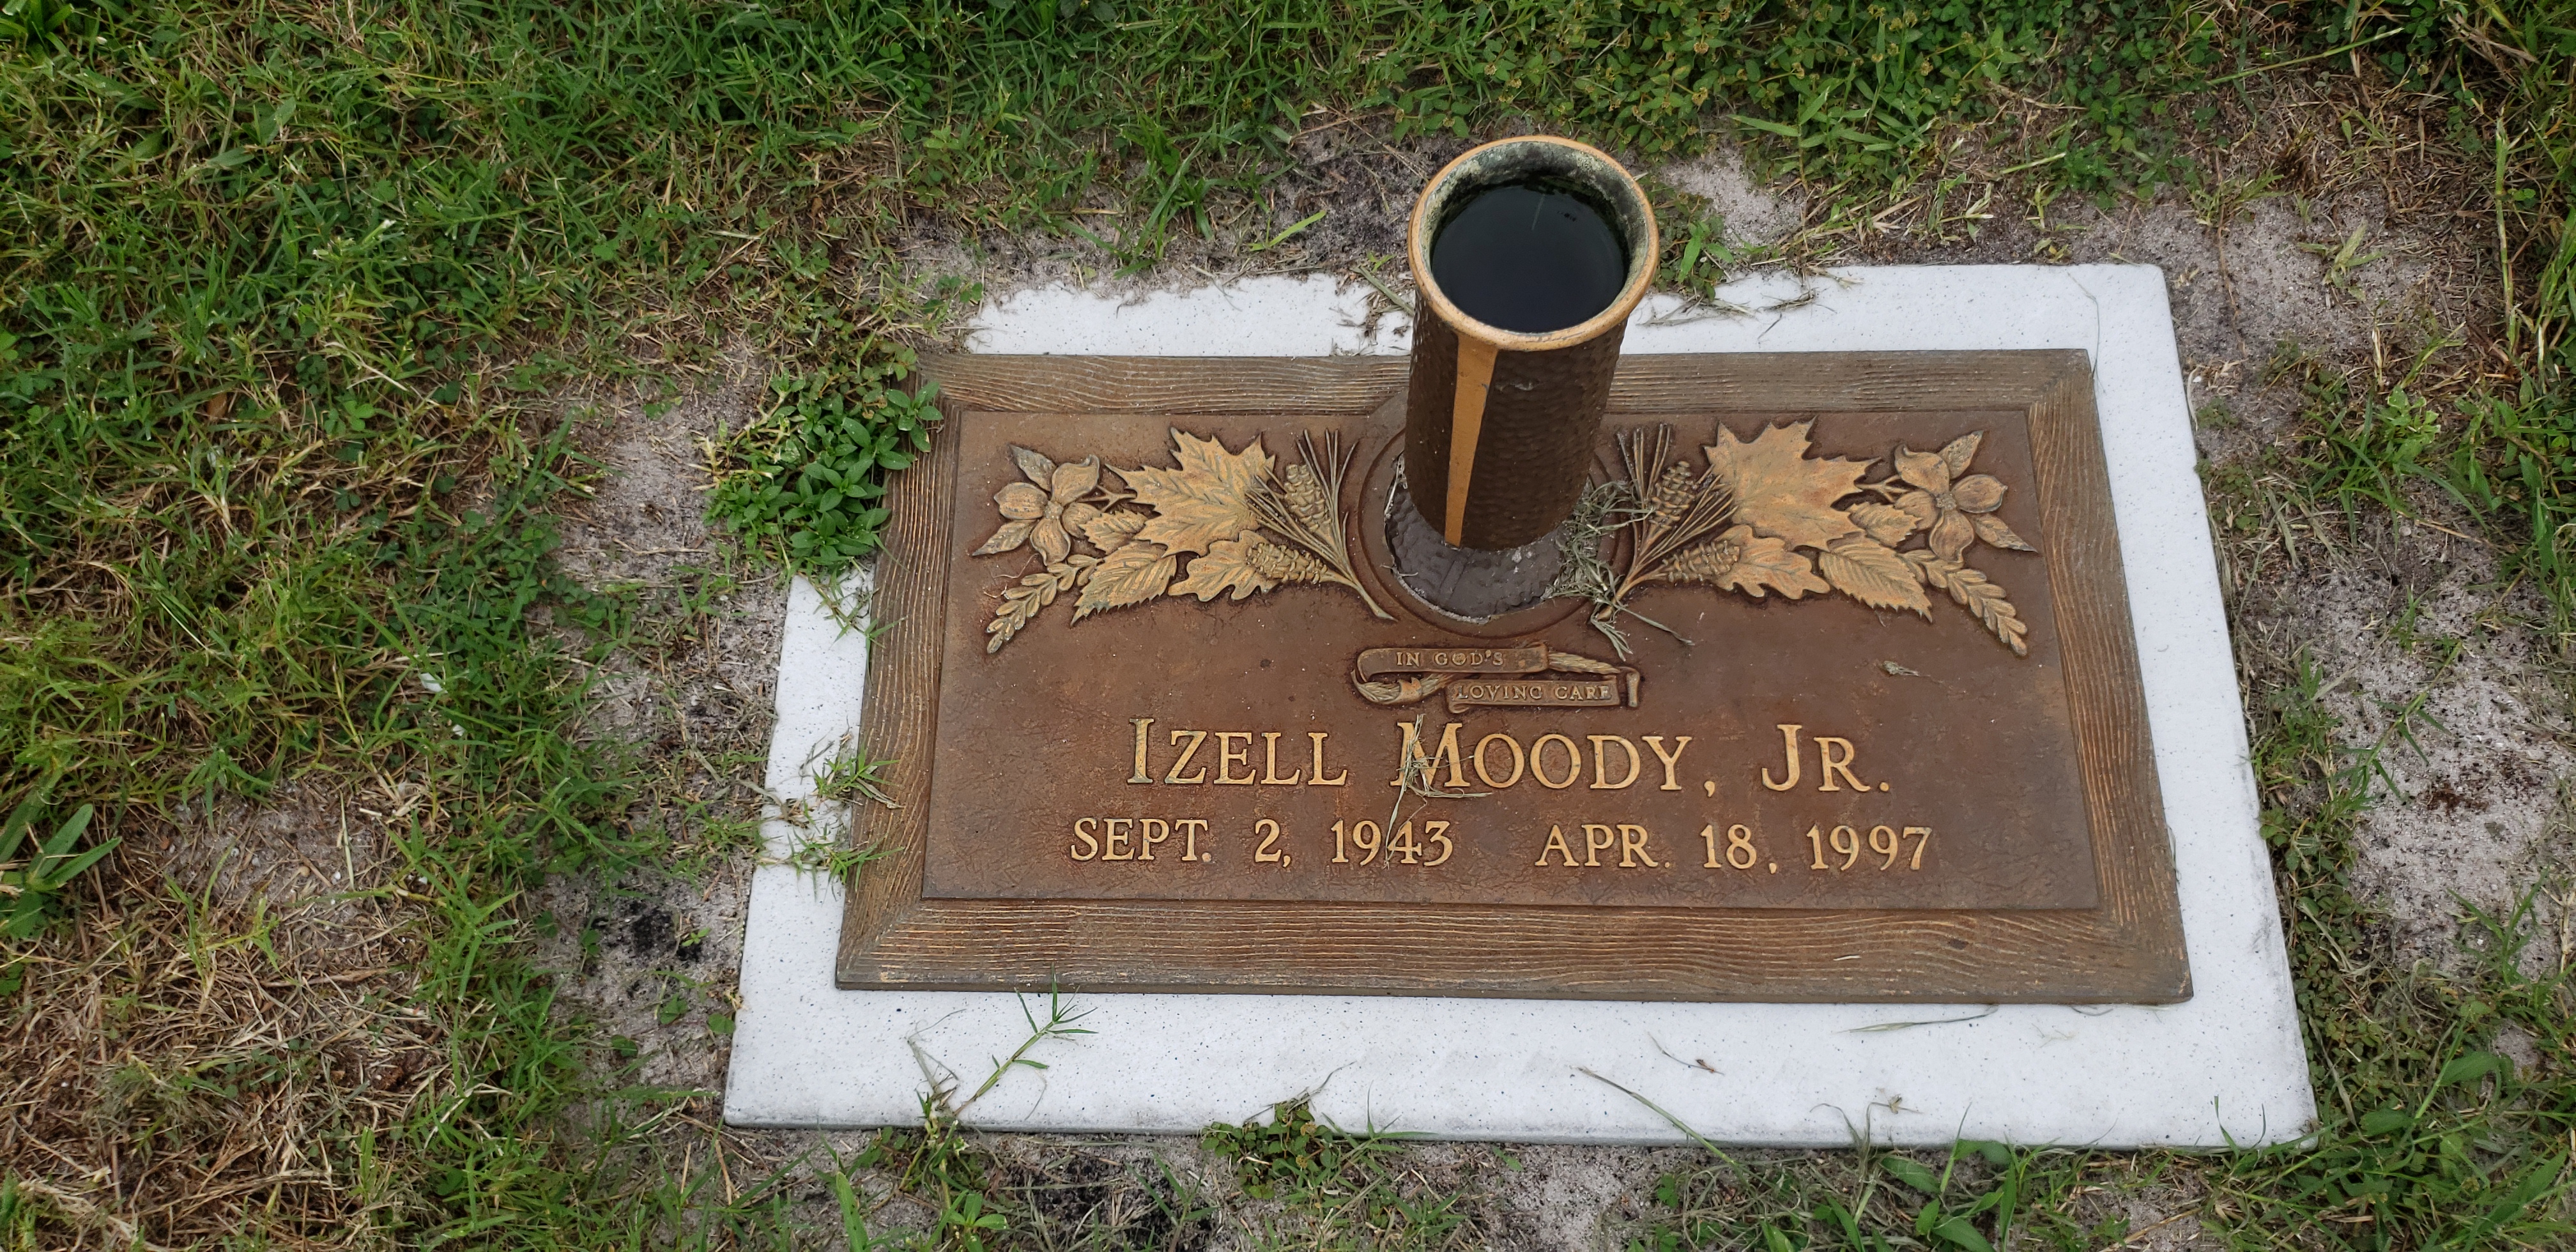 Izell Moody, Jr